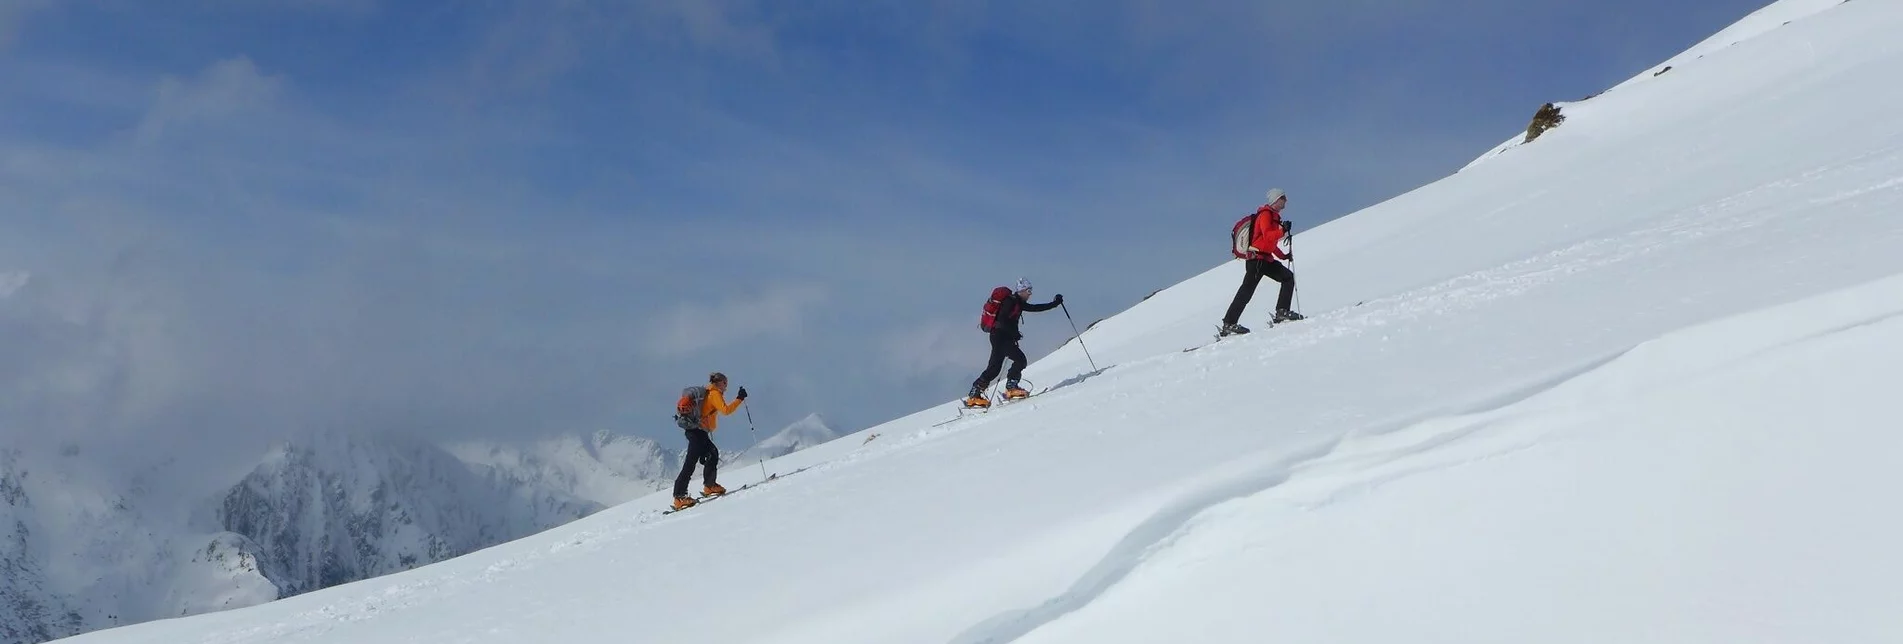 Ski Touring Kammkarlspitze 2.248 m - Touren-Impression #1 | © Volkhard Maier